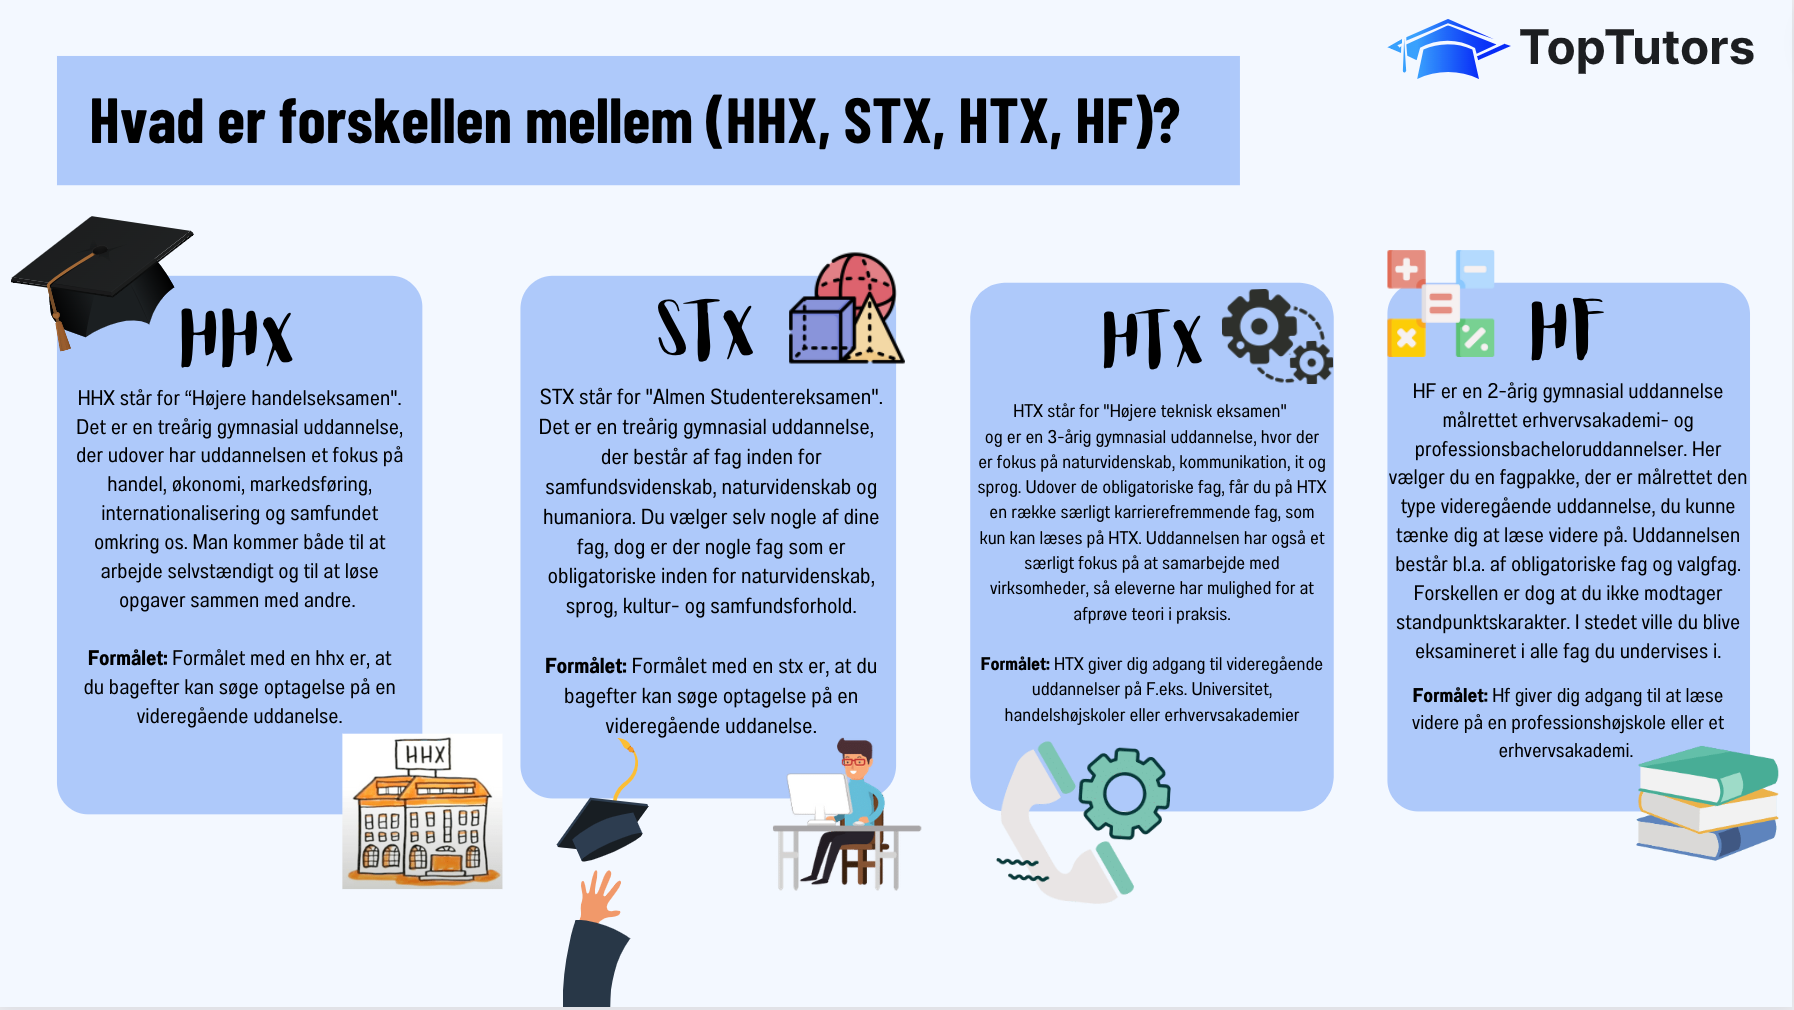 Forskelle på studentereksamenerne HHX, STX; HTX og HF.